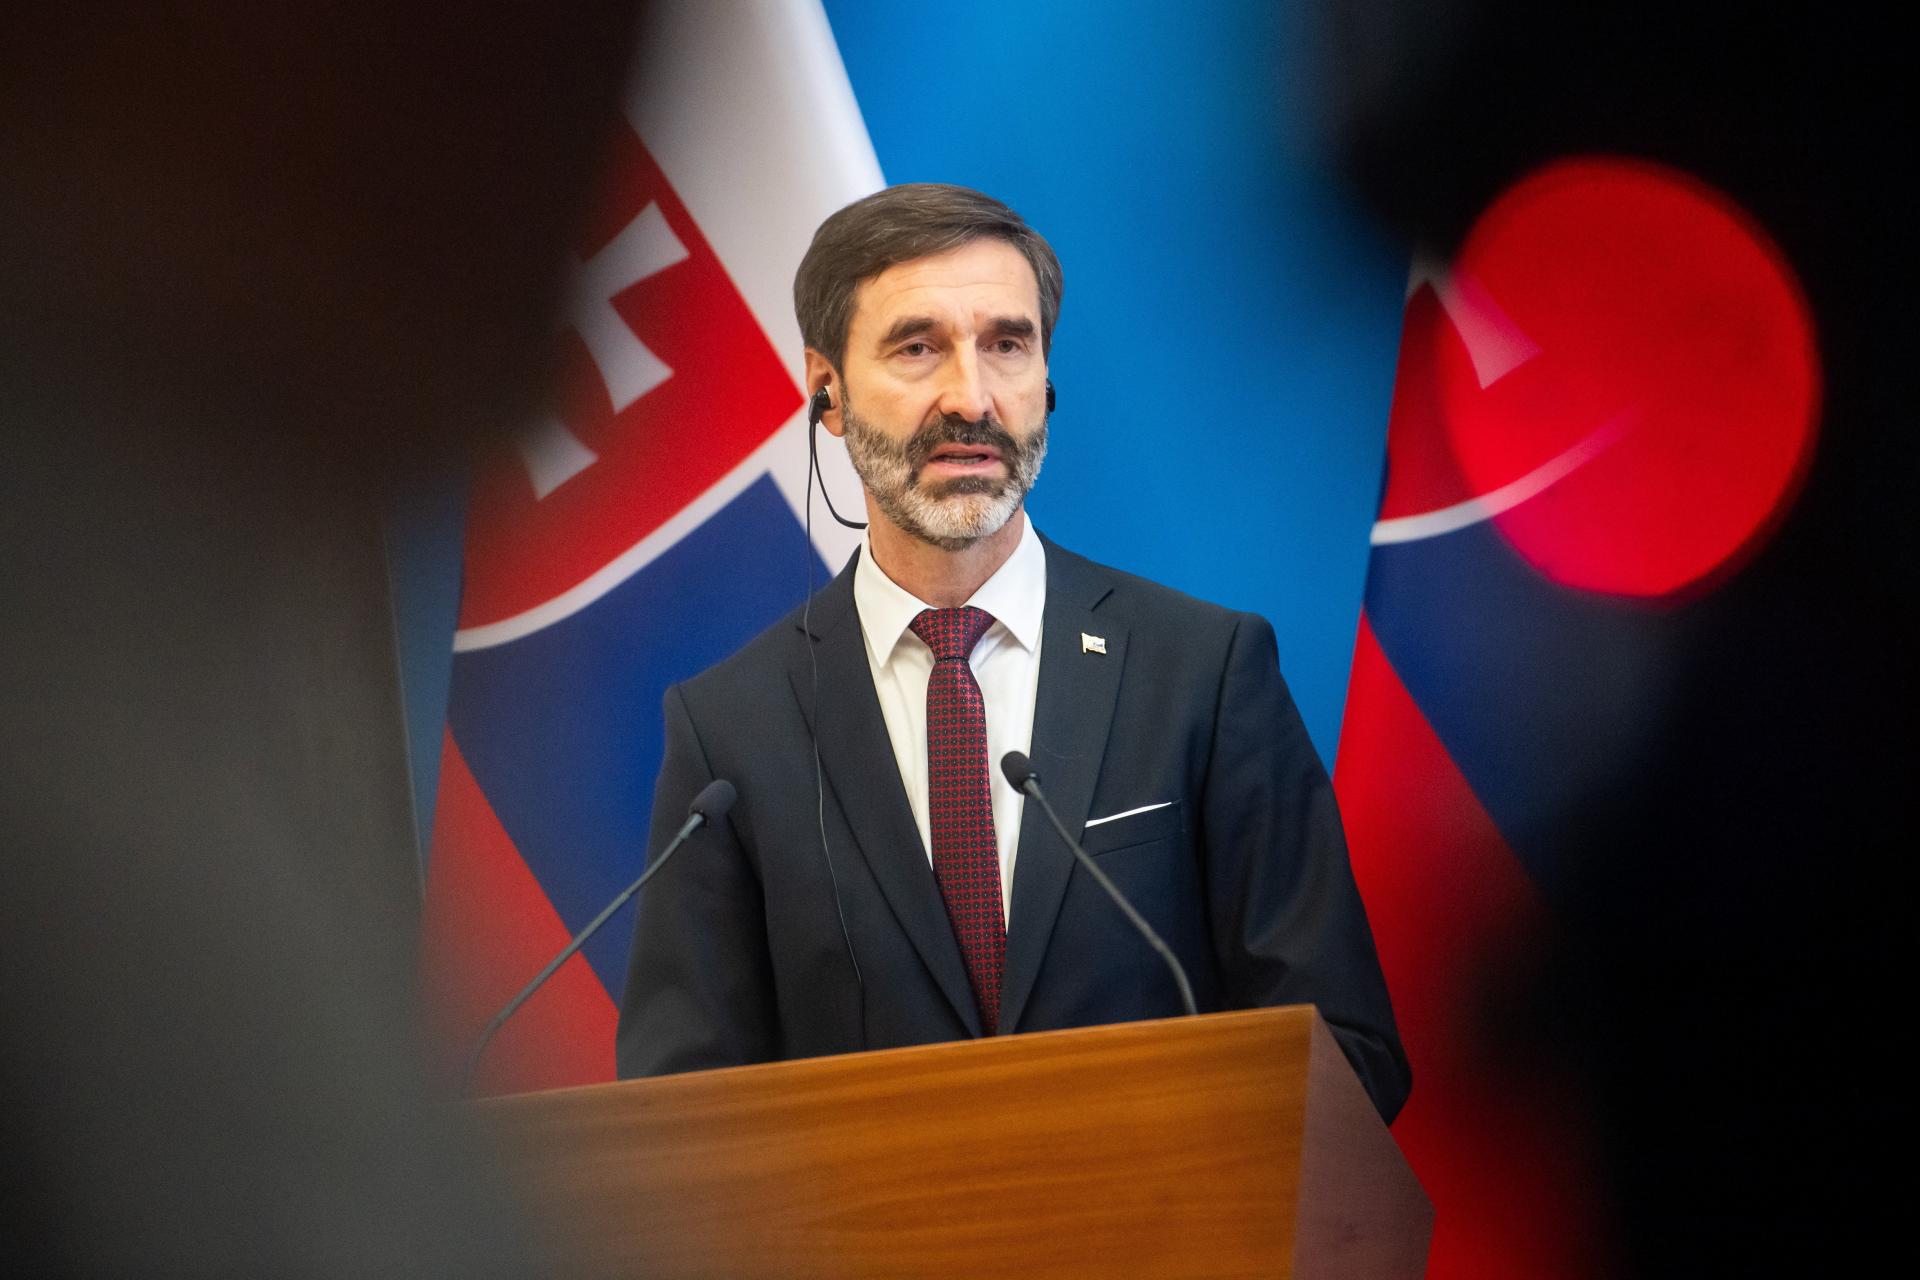 Zahraničná politika predošlých vlád nepozerala na záujmy Slovenska, vyhlásil Blanár